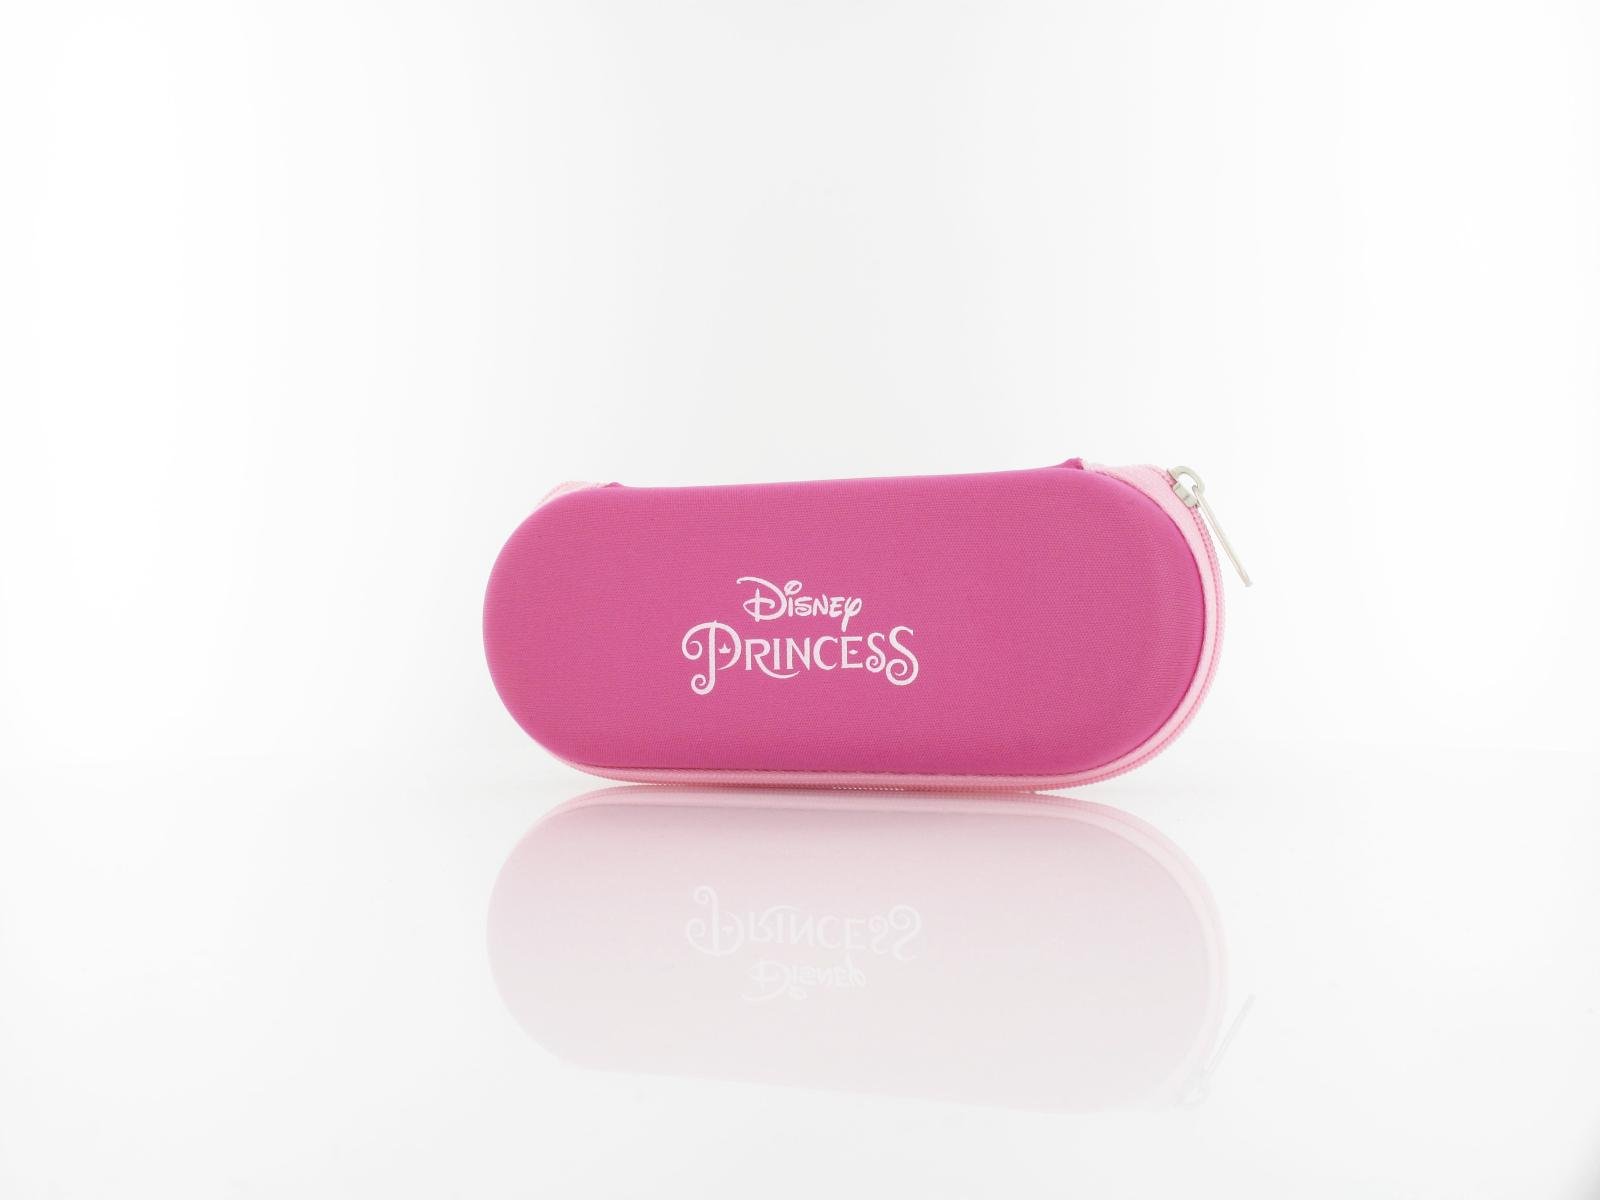 Disney Princess | DP AA185 C70 48 | pink hell